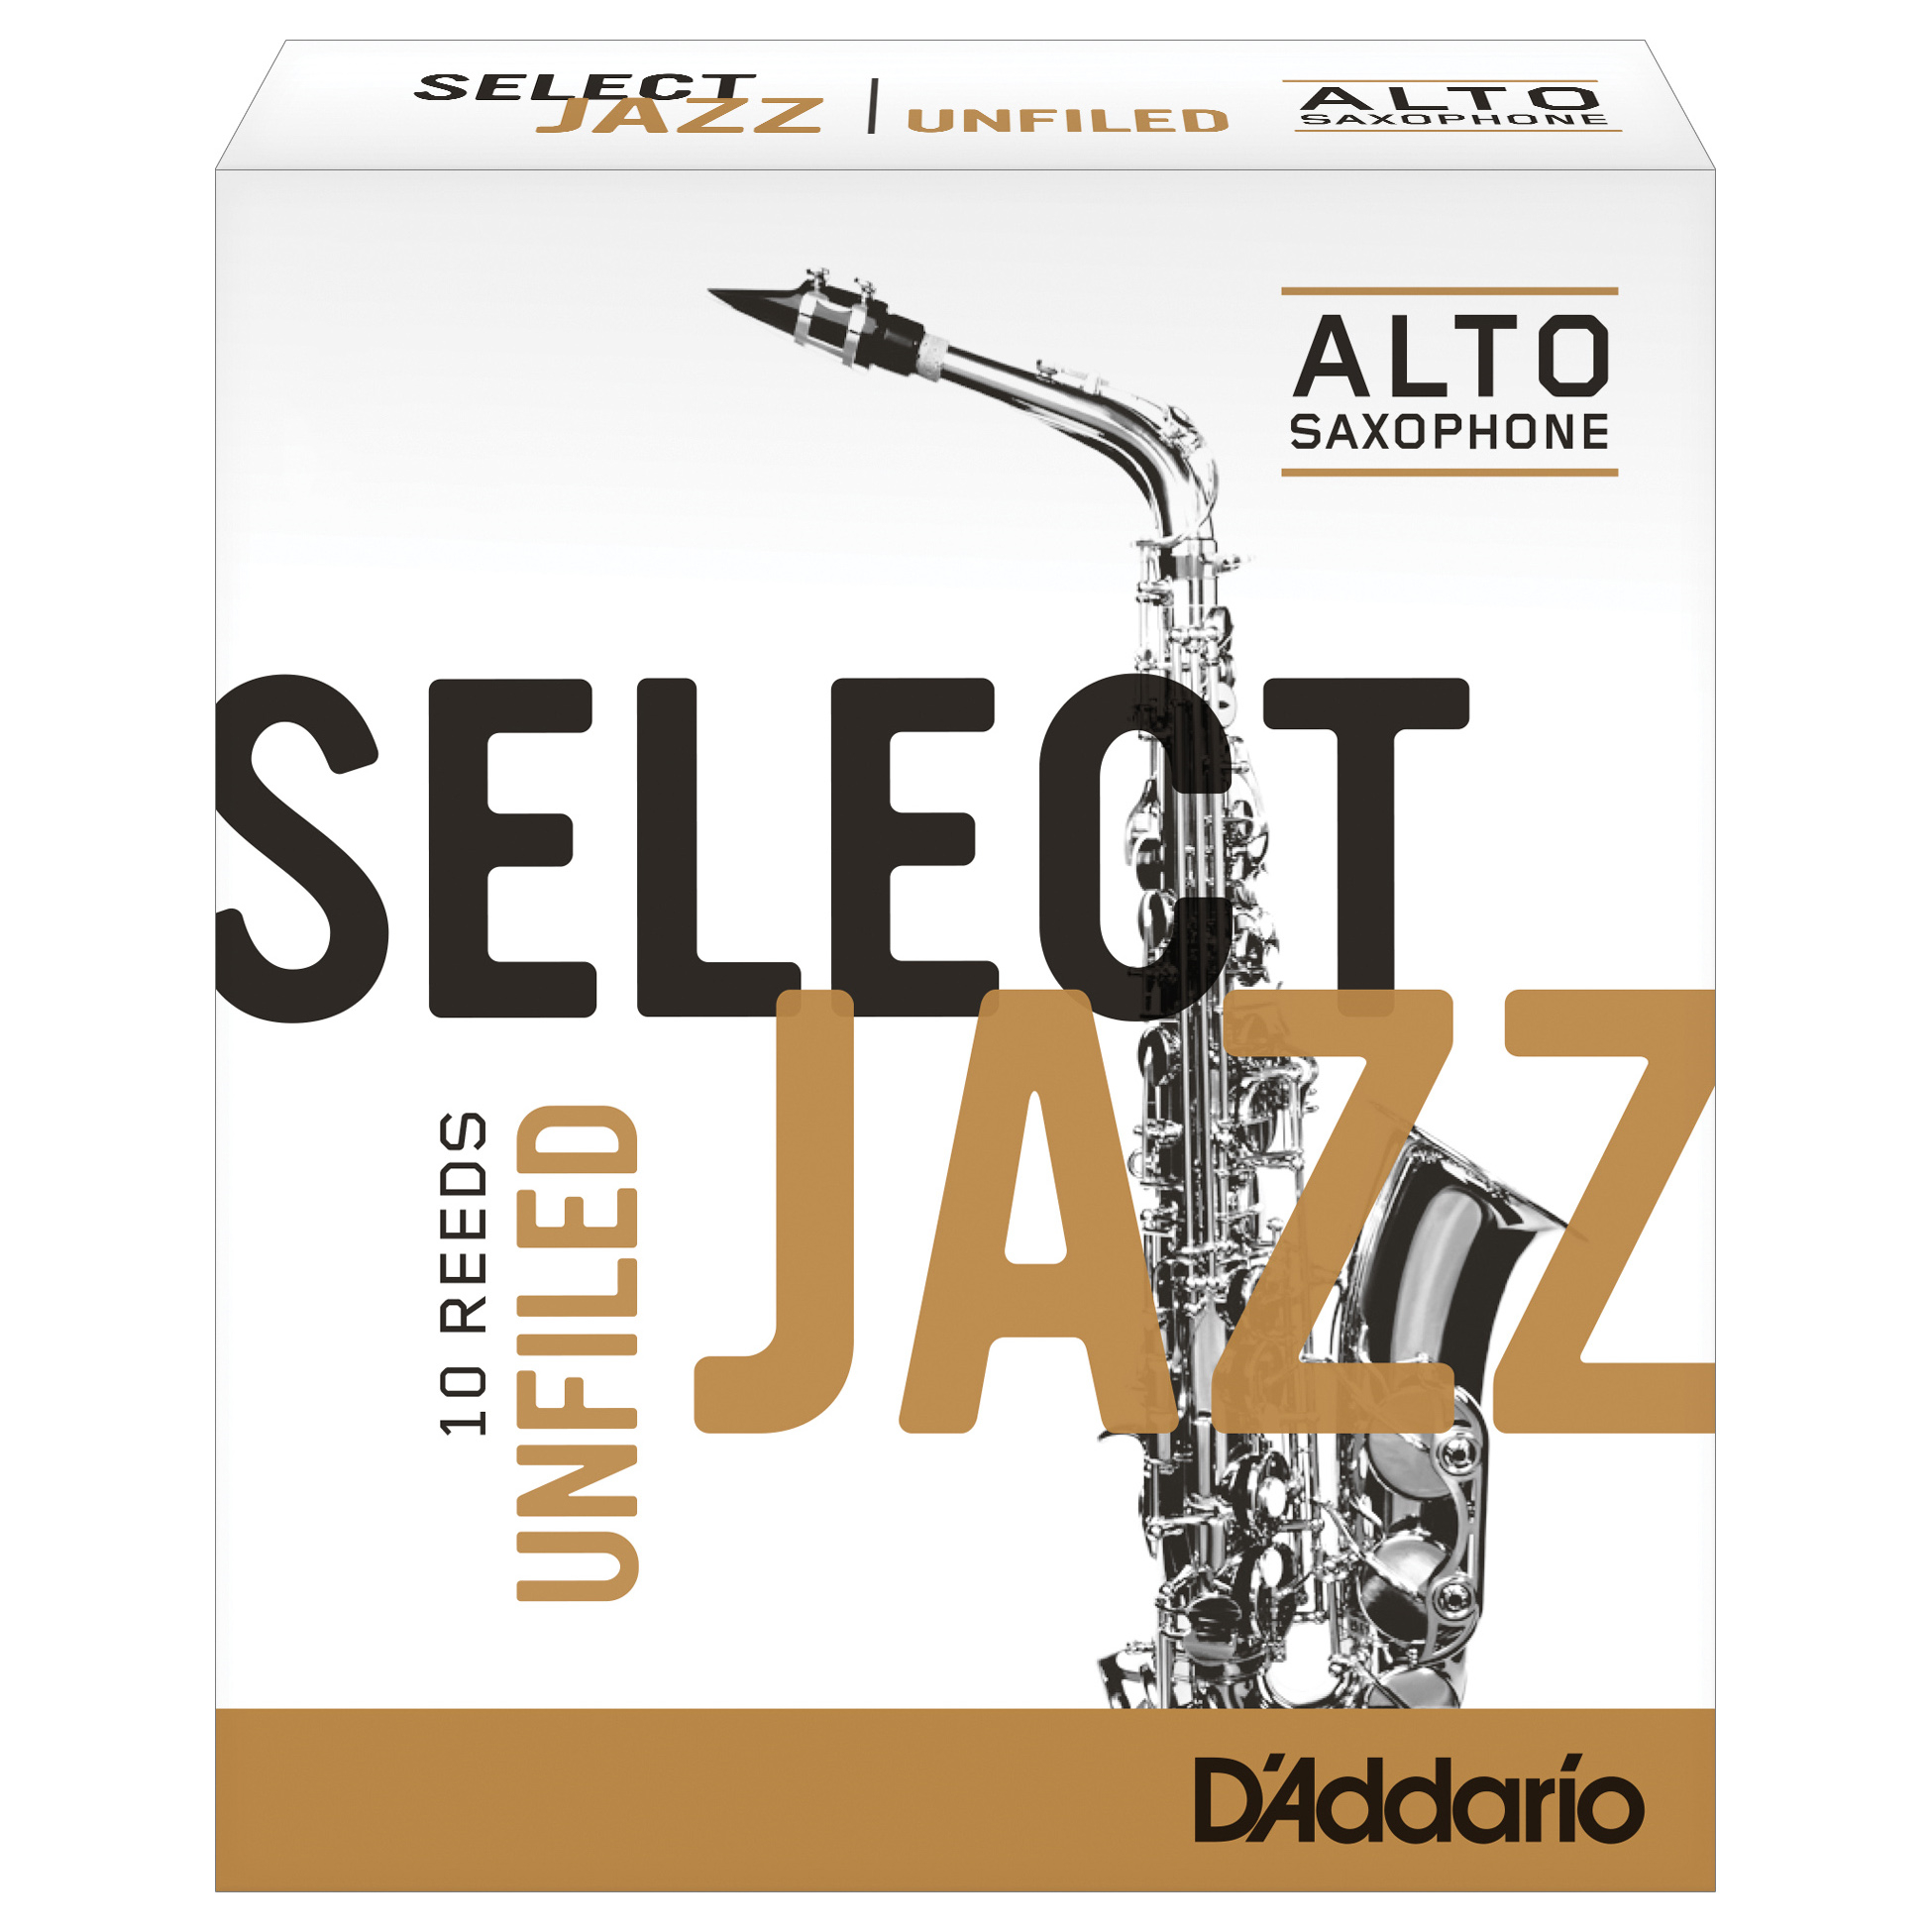 D'Addario Jazz Select Unfiled Reeds - Alto Sax (Box of 10)